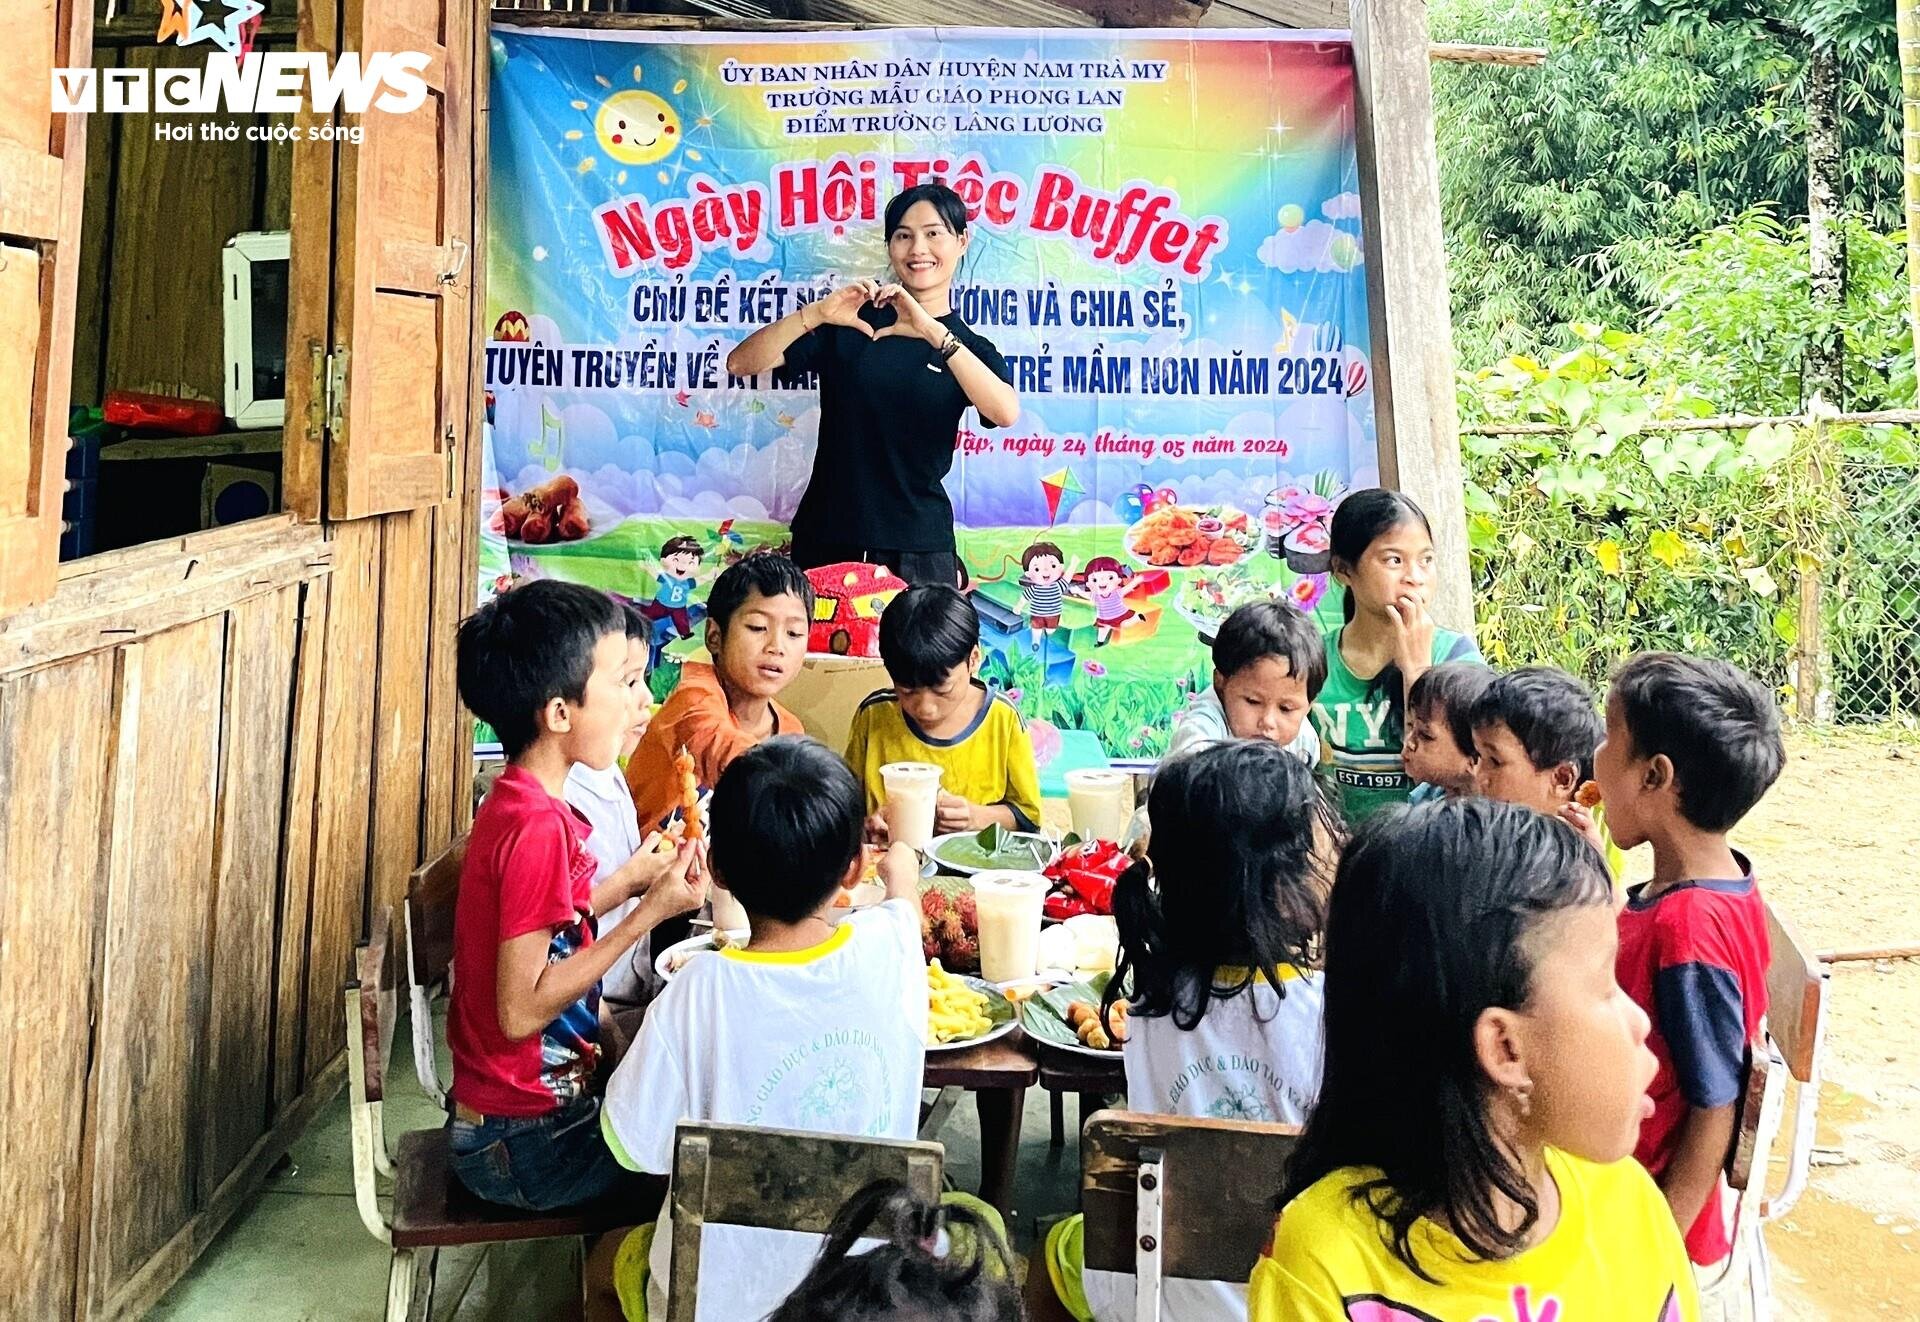 Những học sinh nghèo trên rẻo cao Ngọc Linh lần đầu được ăn tiệc buffet - 2